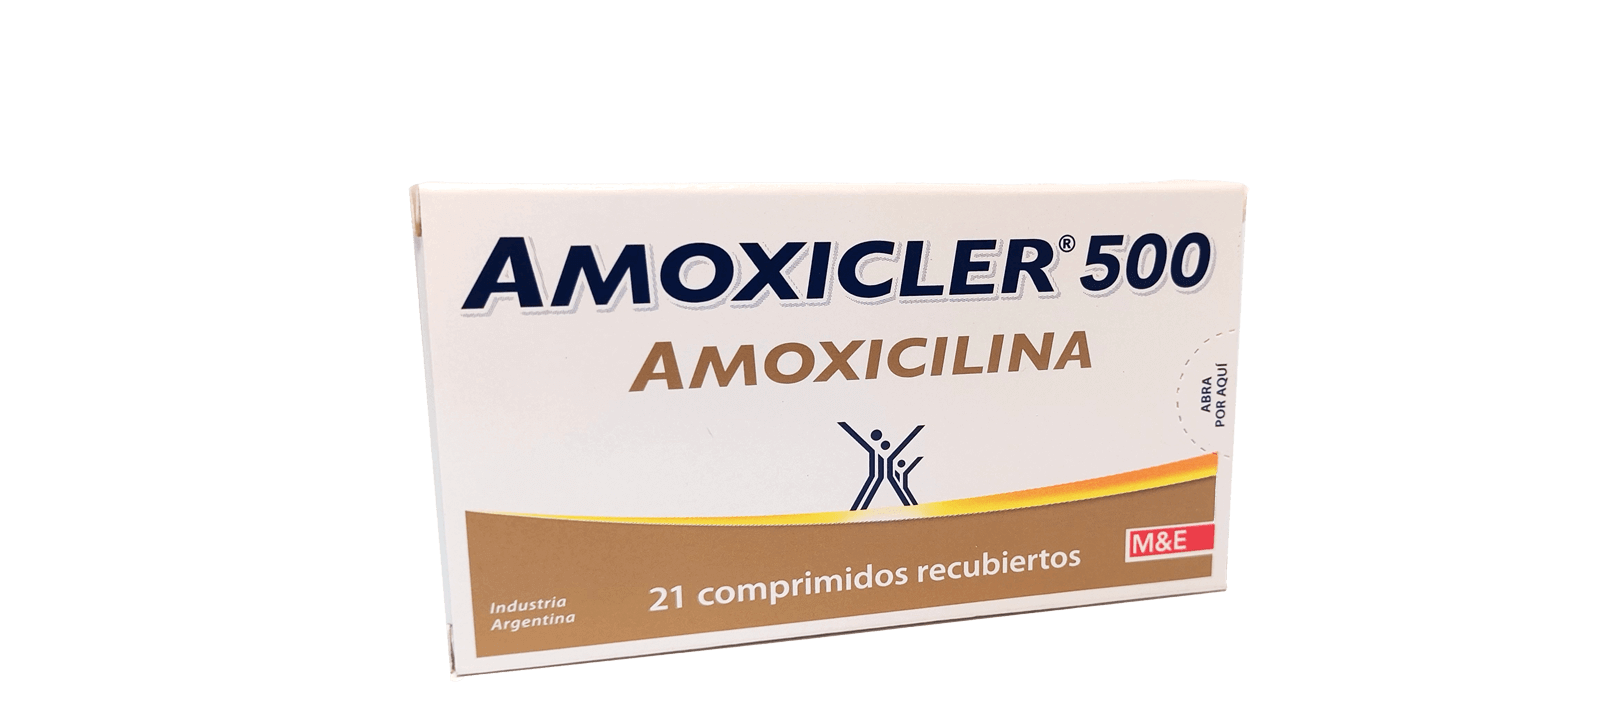 amoxicler